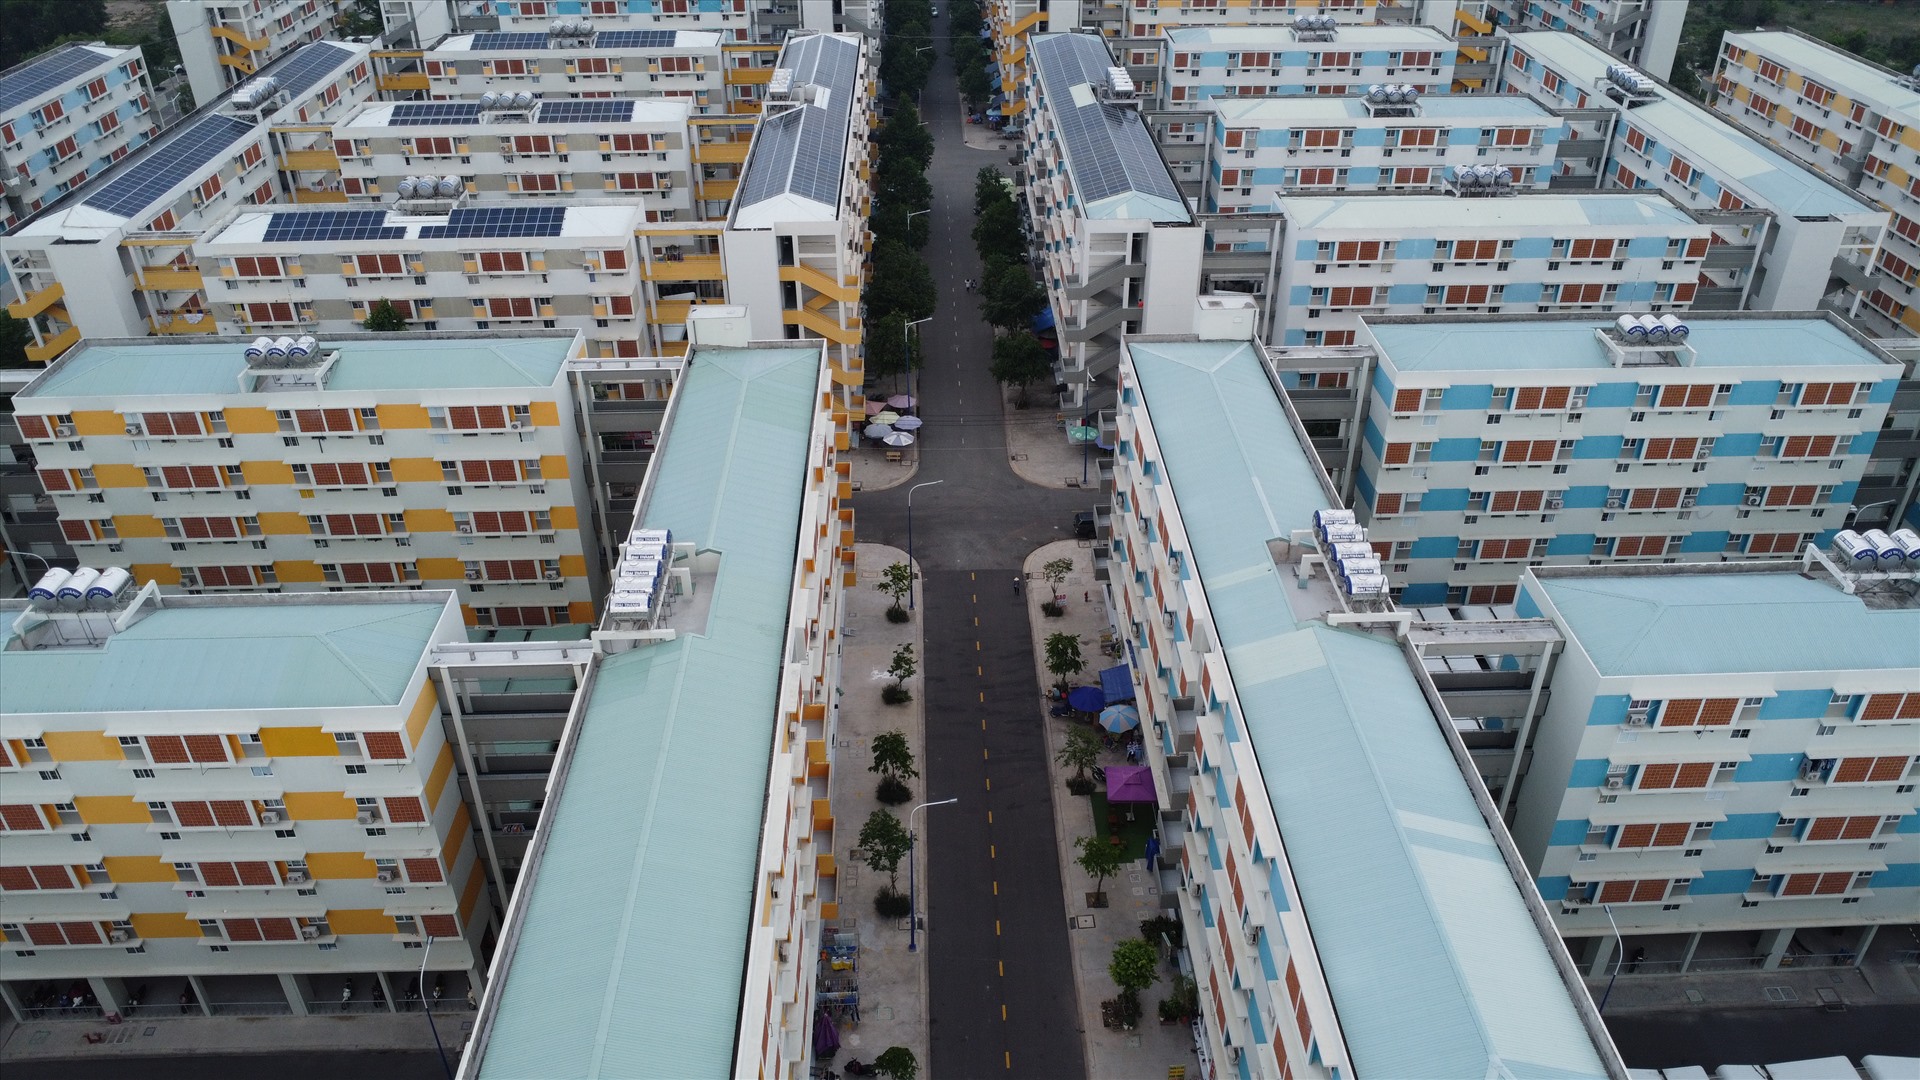 Từ quản lý xây dựng cho tới quản lý vận hành nhà ở xã hội Becamex Định Hòa đều có nhiều cải thiện so với giai đoạn trước. Kiến trúc các căn nhà đẹp và thông thoáng hơn. Nơi sinh hoạt cộng đồng, đường giao thông nội bộ rộng rãi hơn, được kết nối với các khu công nghiệp và khu dân cư, đô thị lân cận.